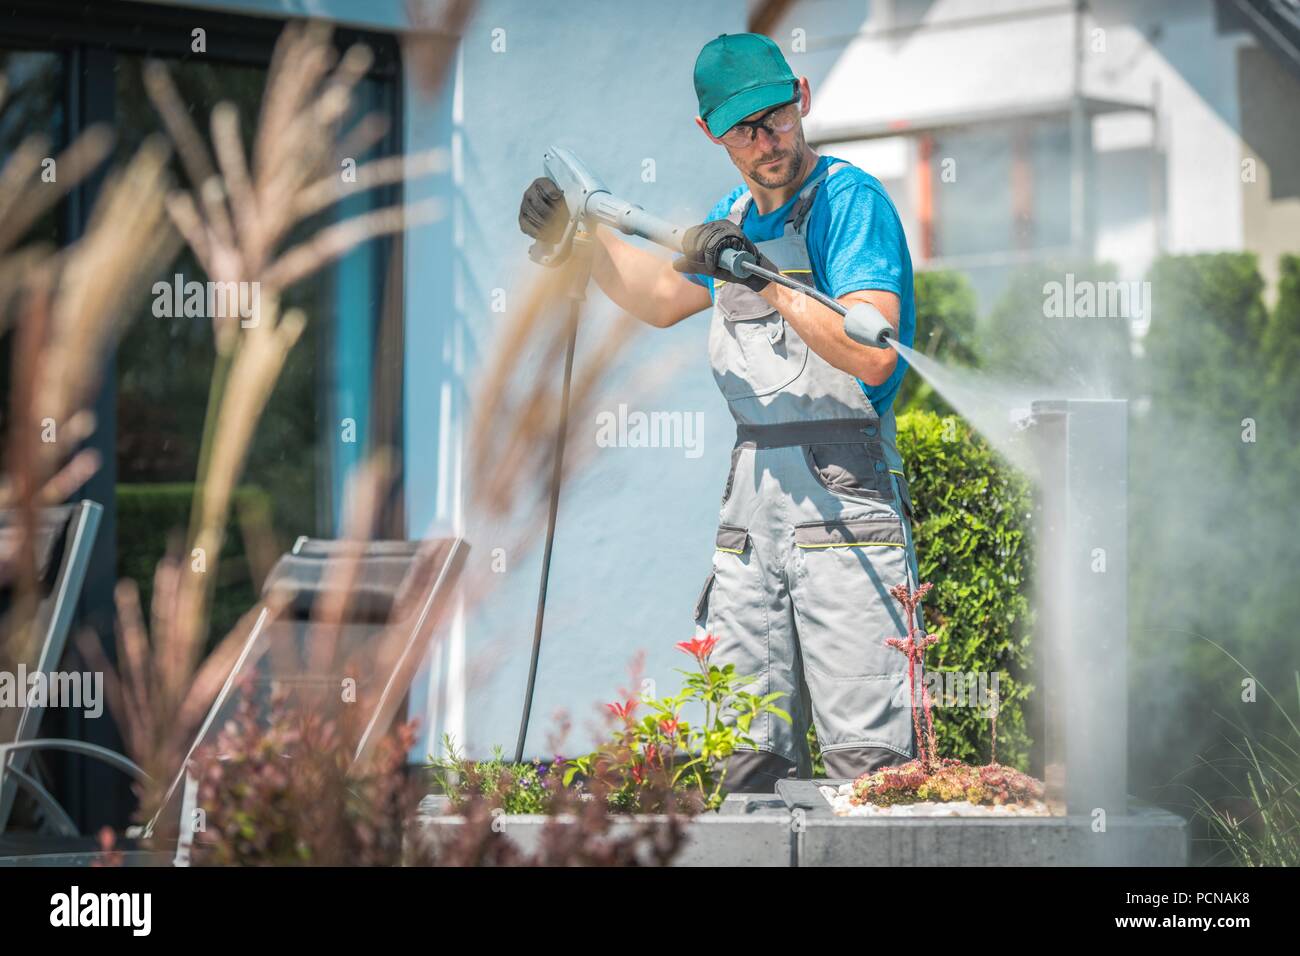 Druck Waschen im Garten. Kaukasischen Männern in seinem 30s und der Frühjahrsputz. Stockfoto